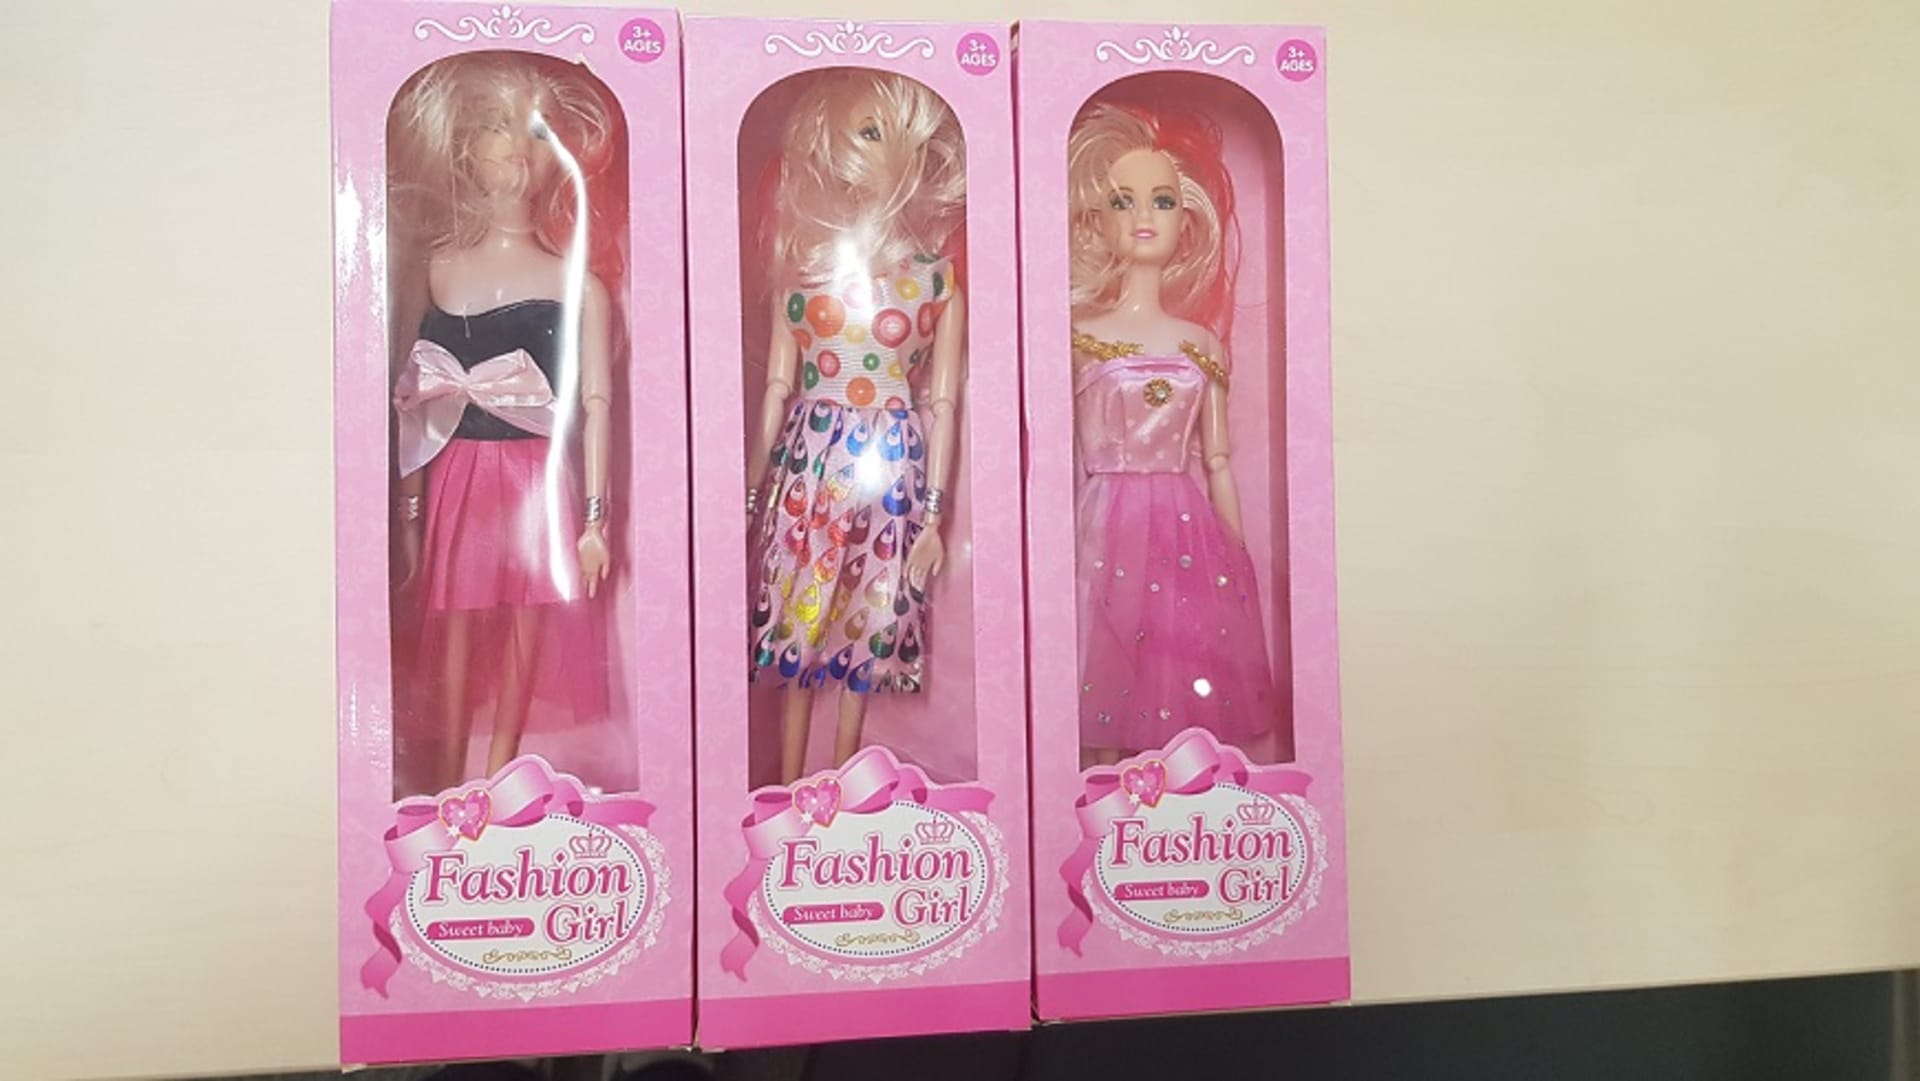 Tato panenka Barbie může mít vliv na reprodukční schopnosti chlapců.